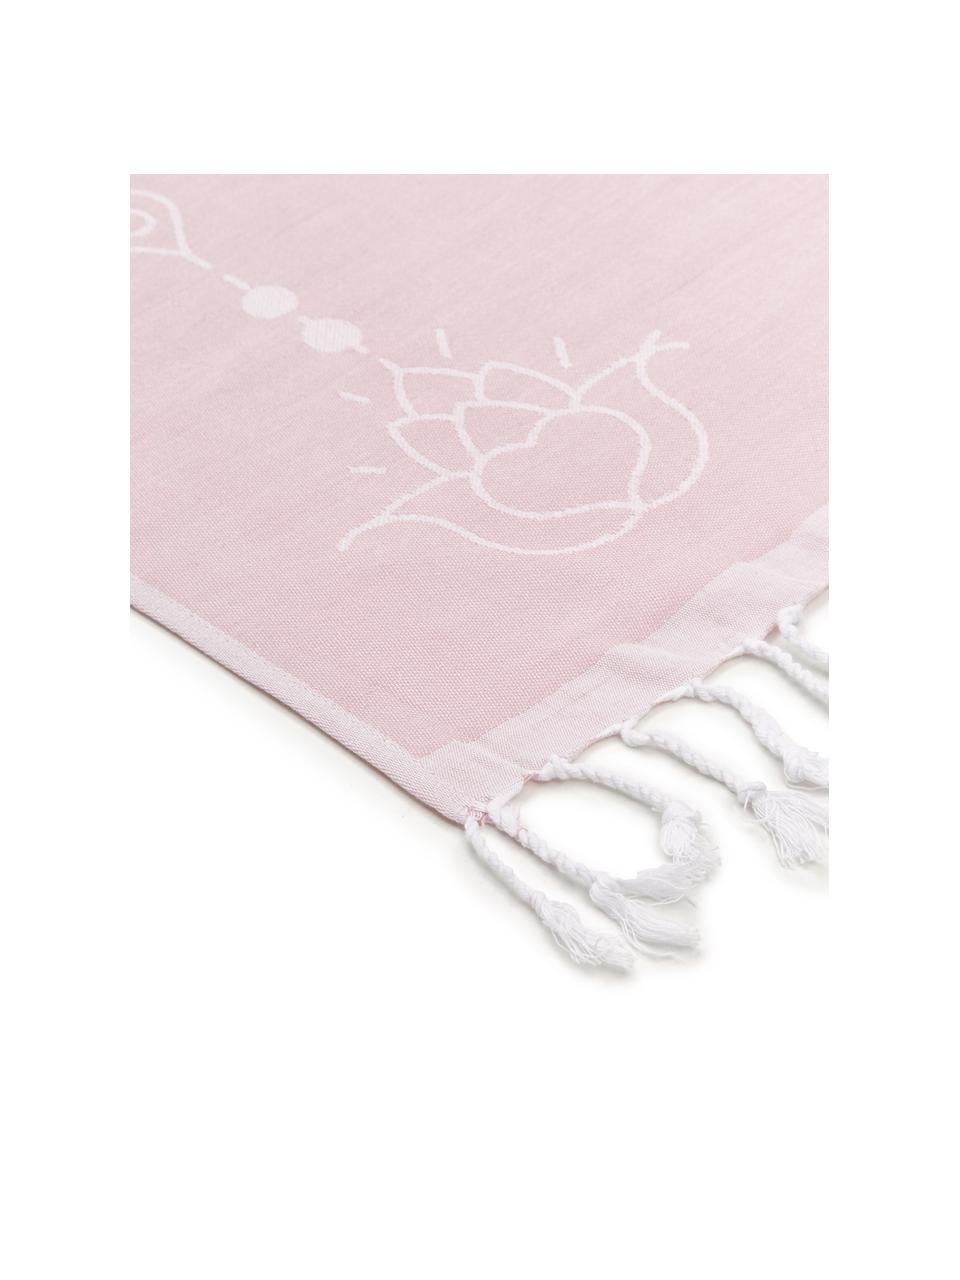 Hamamtuch Lotus, 100% Baumwolle
leichte Stoffqualität, 210 g/m², Rosa, Weiß, 90 x 180 cm